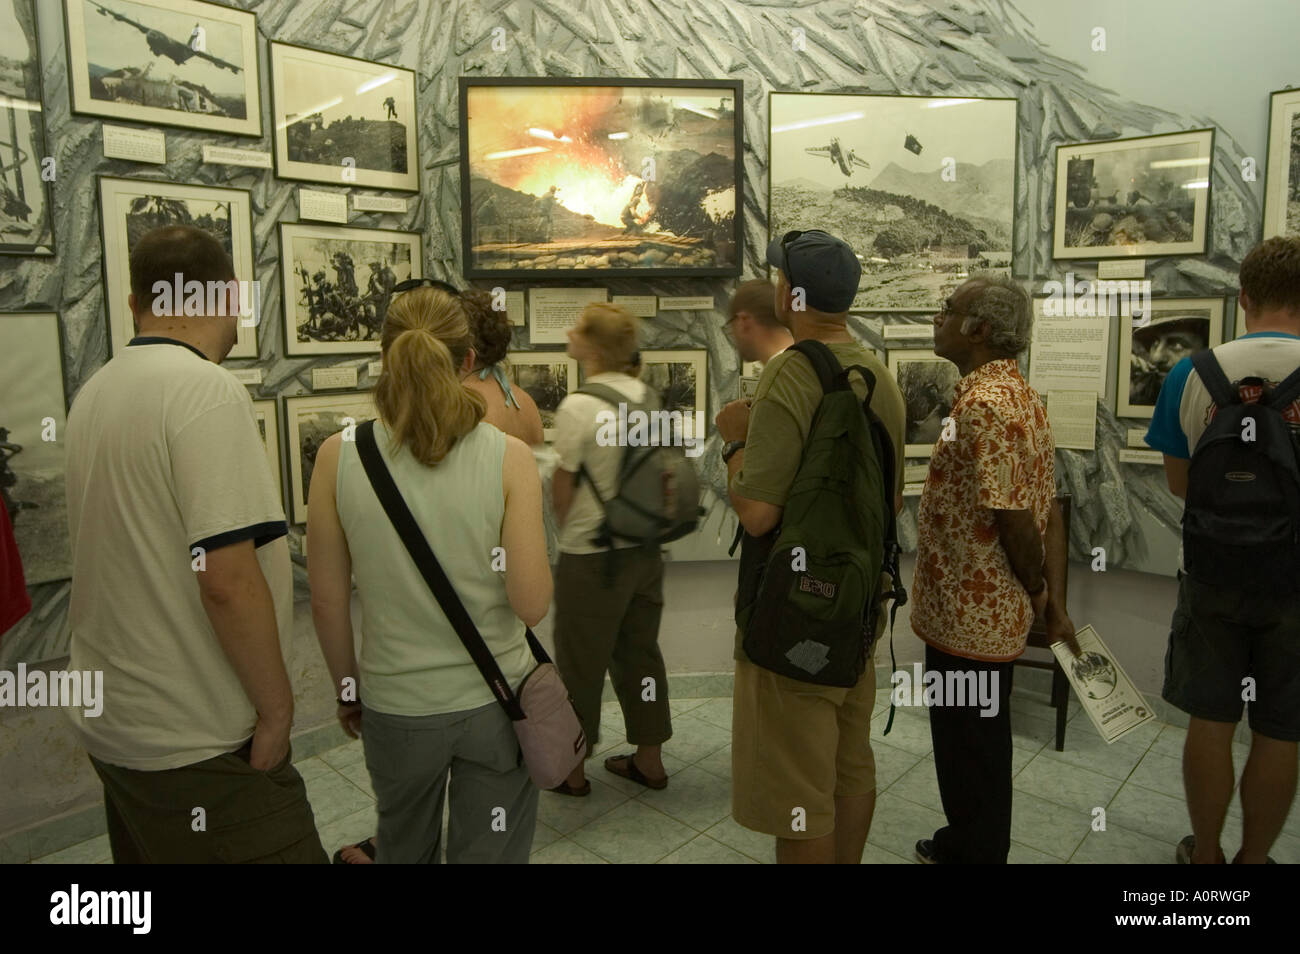 Crimes de guerre Musée Ho Chi Minh City Saigon Vietnam Asie Asie du sud-est Banque D'Images